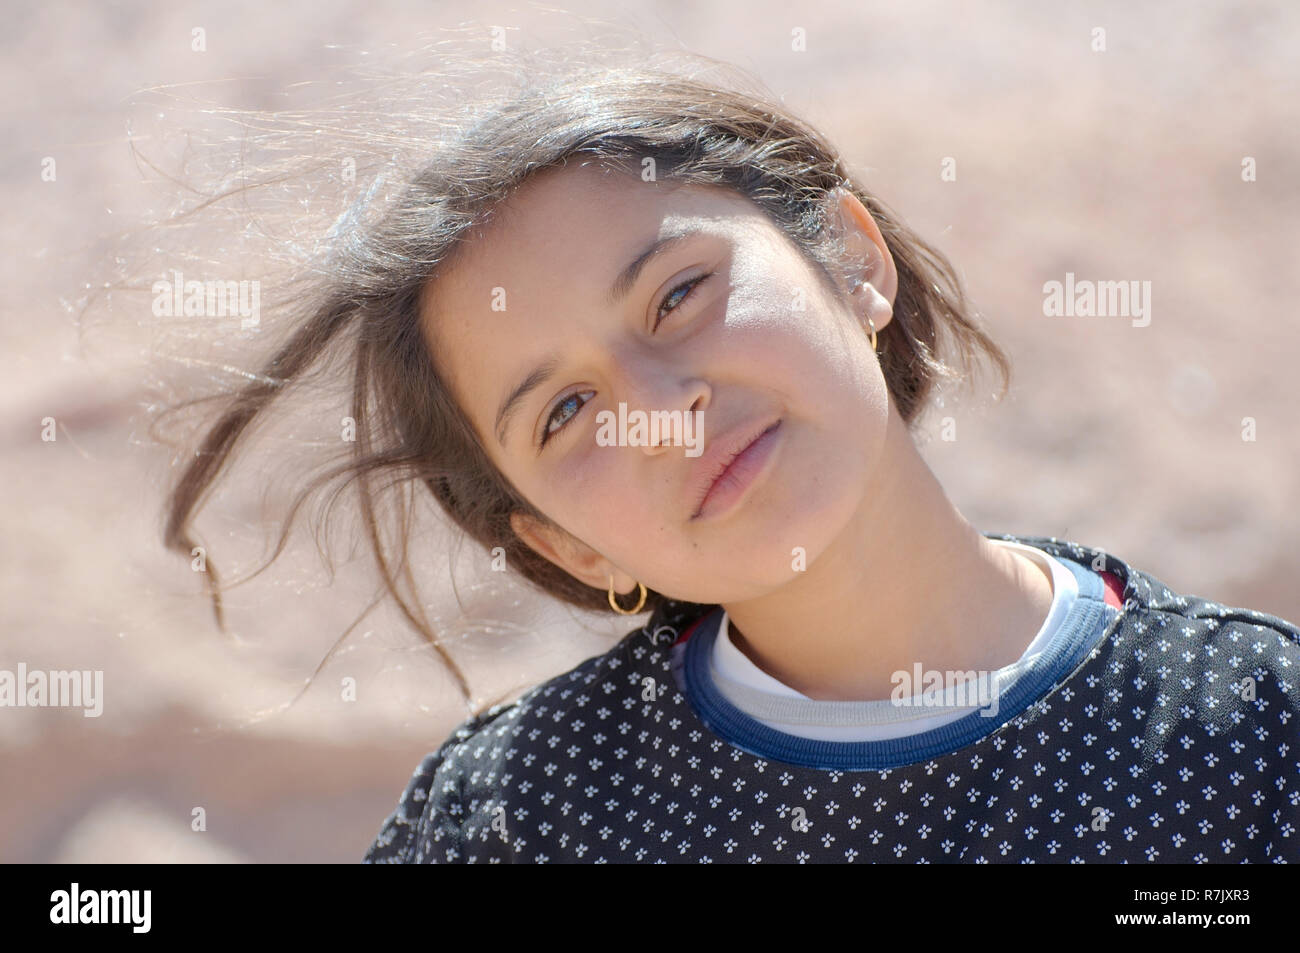 Portrait d'un Bédouin, jeune fille moderne de la péninsule du Sinaï, Égypte Banque D'Images